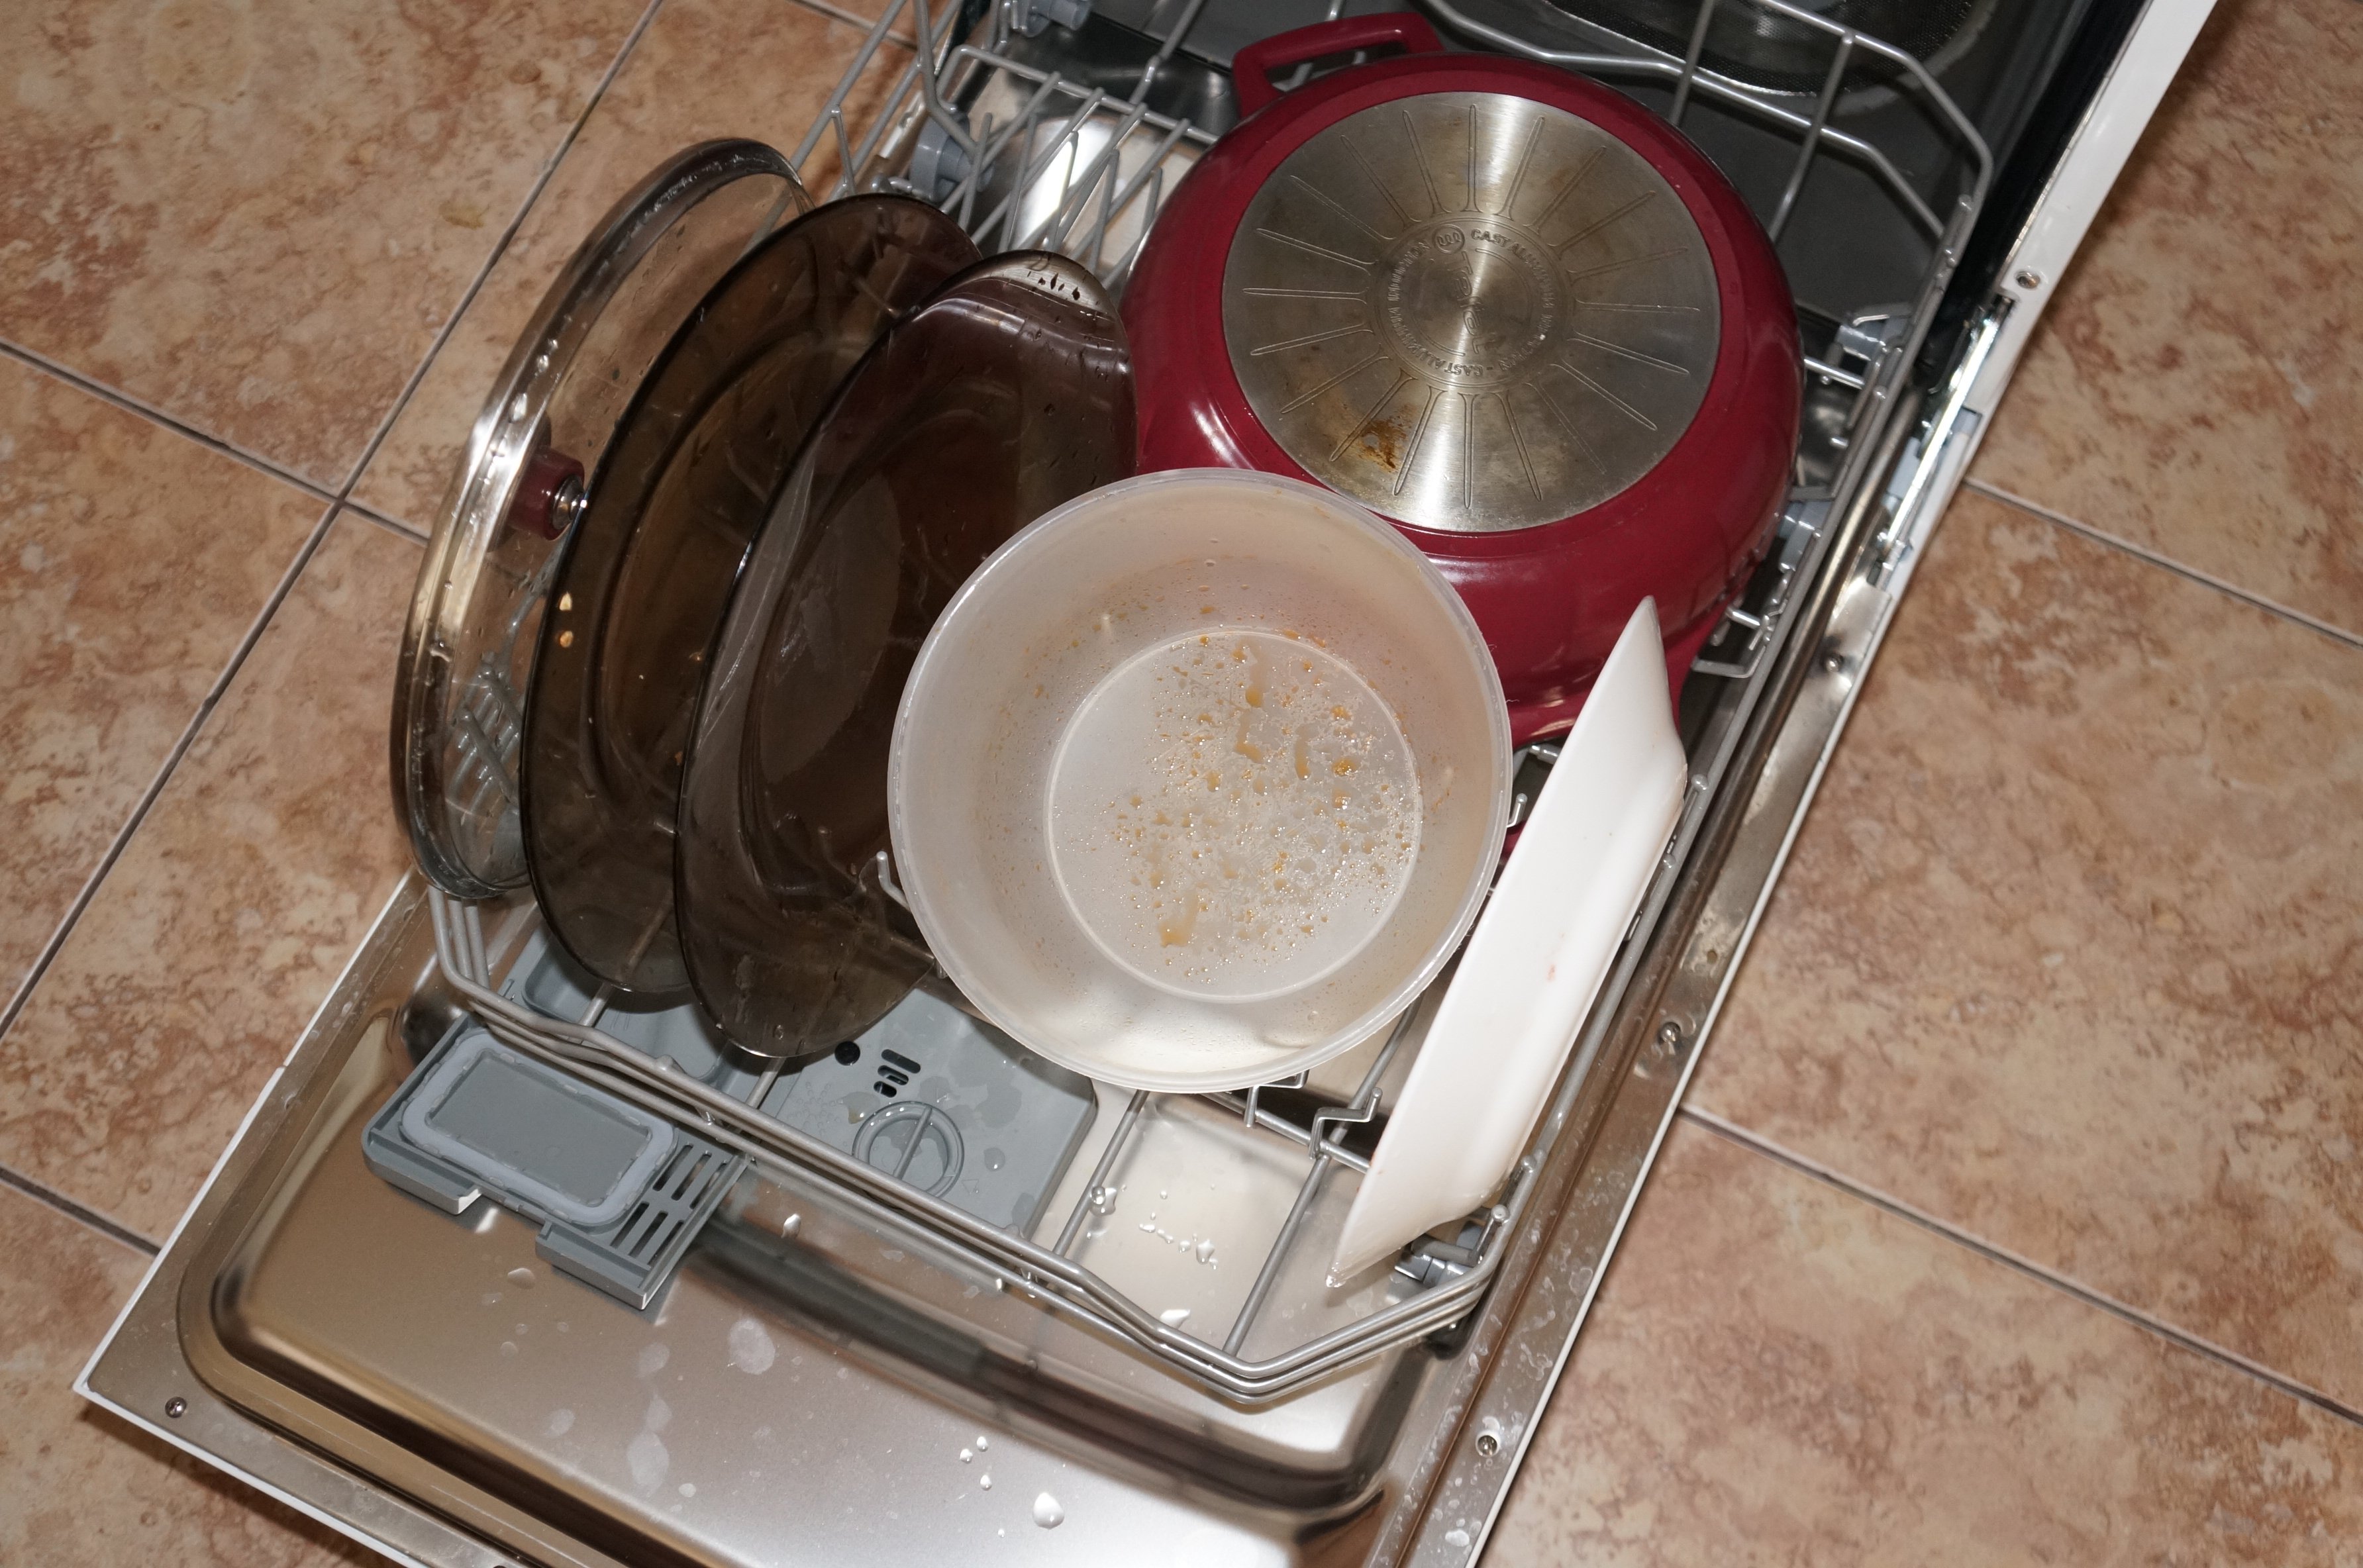 Сковородка можно мыть в посудомойке. Кастрюля в посудомоечной машине. Посудомоечная машина для кастрюль и сковородок. Кастрюли в посудомойке. Посуда в посудомойке.